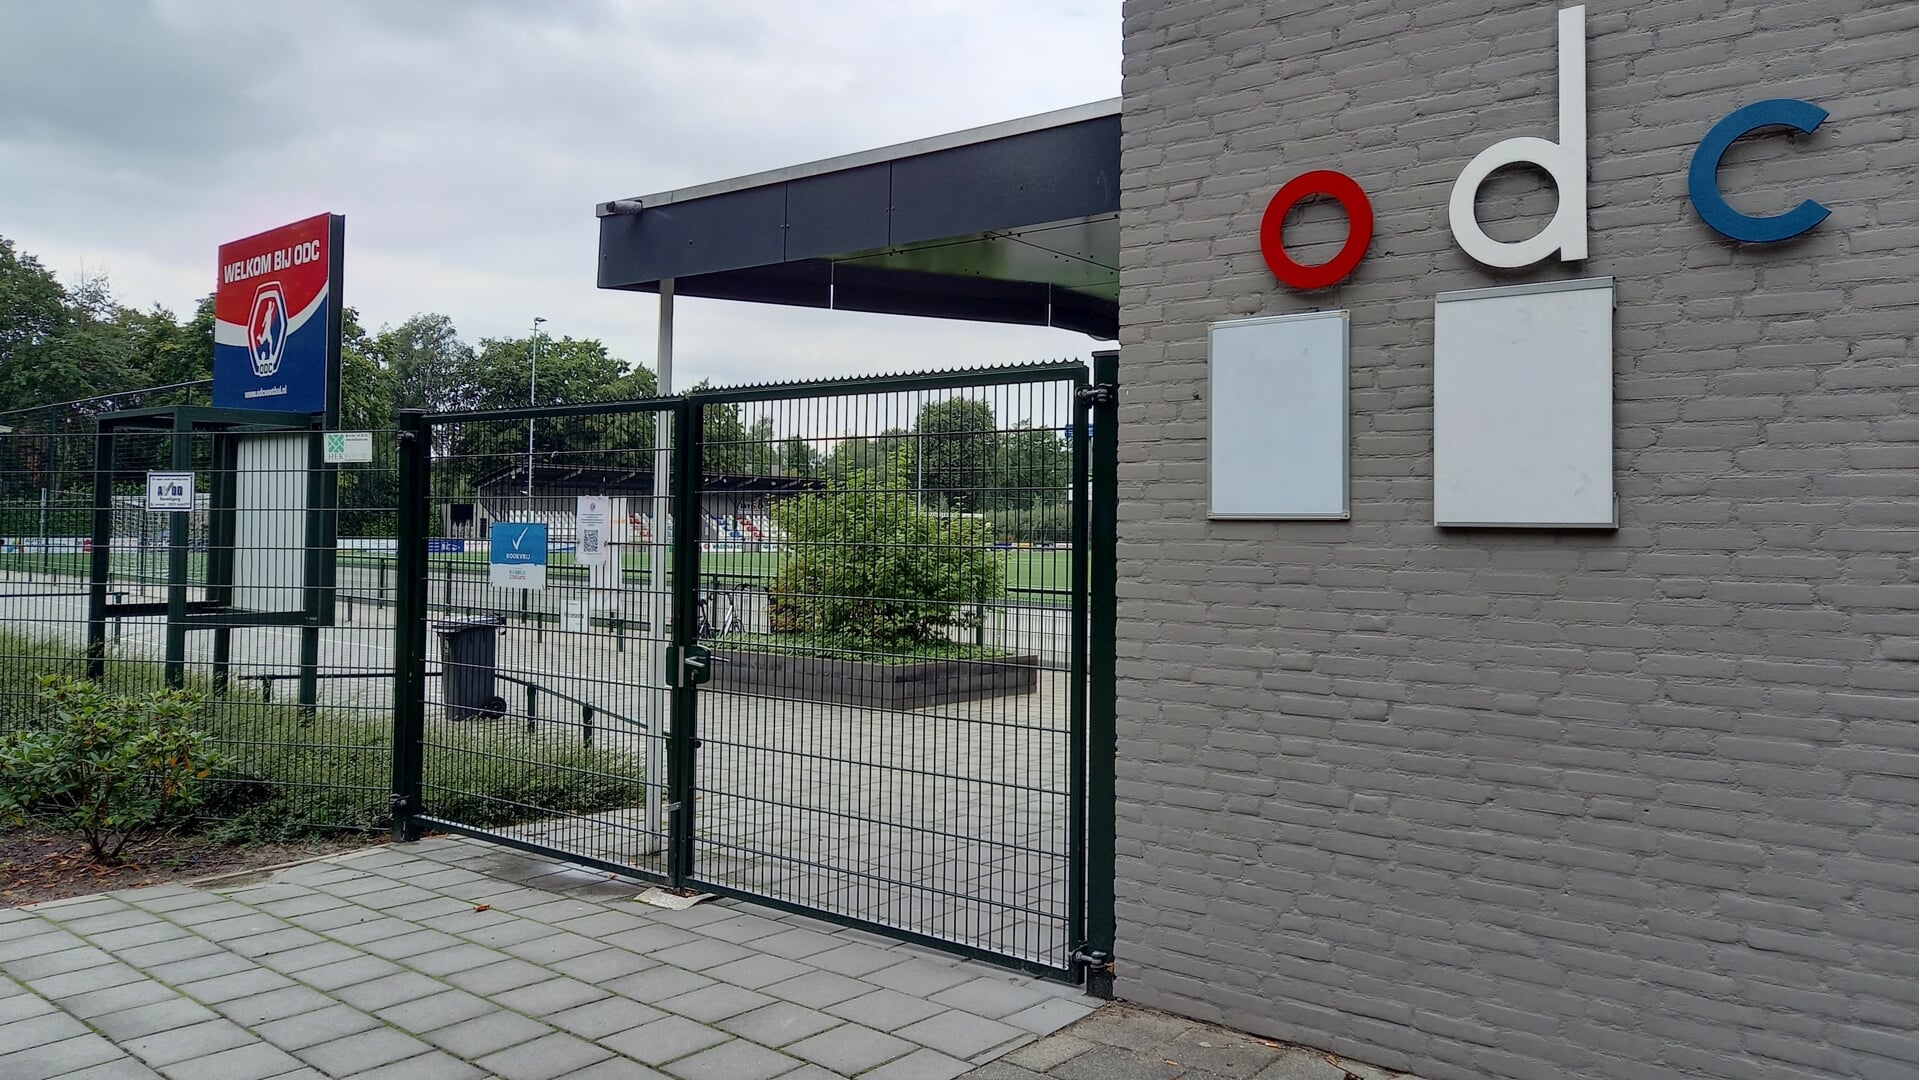 De accommodatie van ODC in park Molenwijk. De club heeft meerdere promoties meegemaakt, waaronder die in 1984.